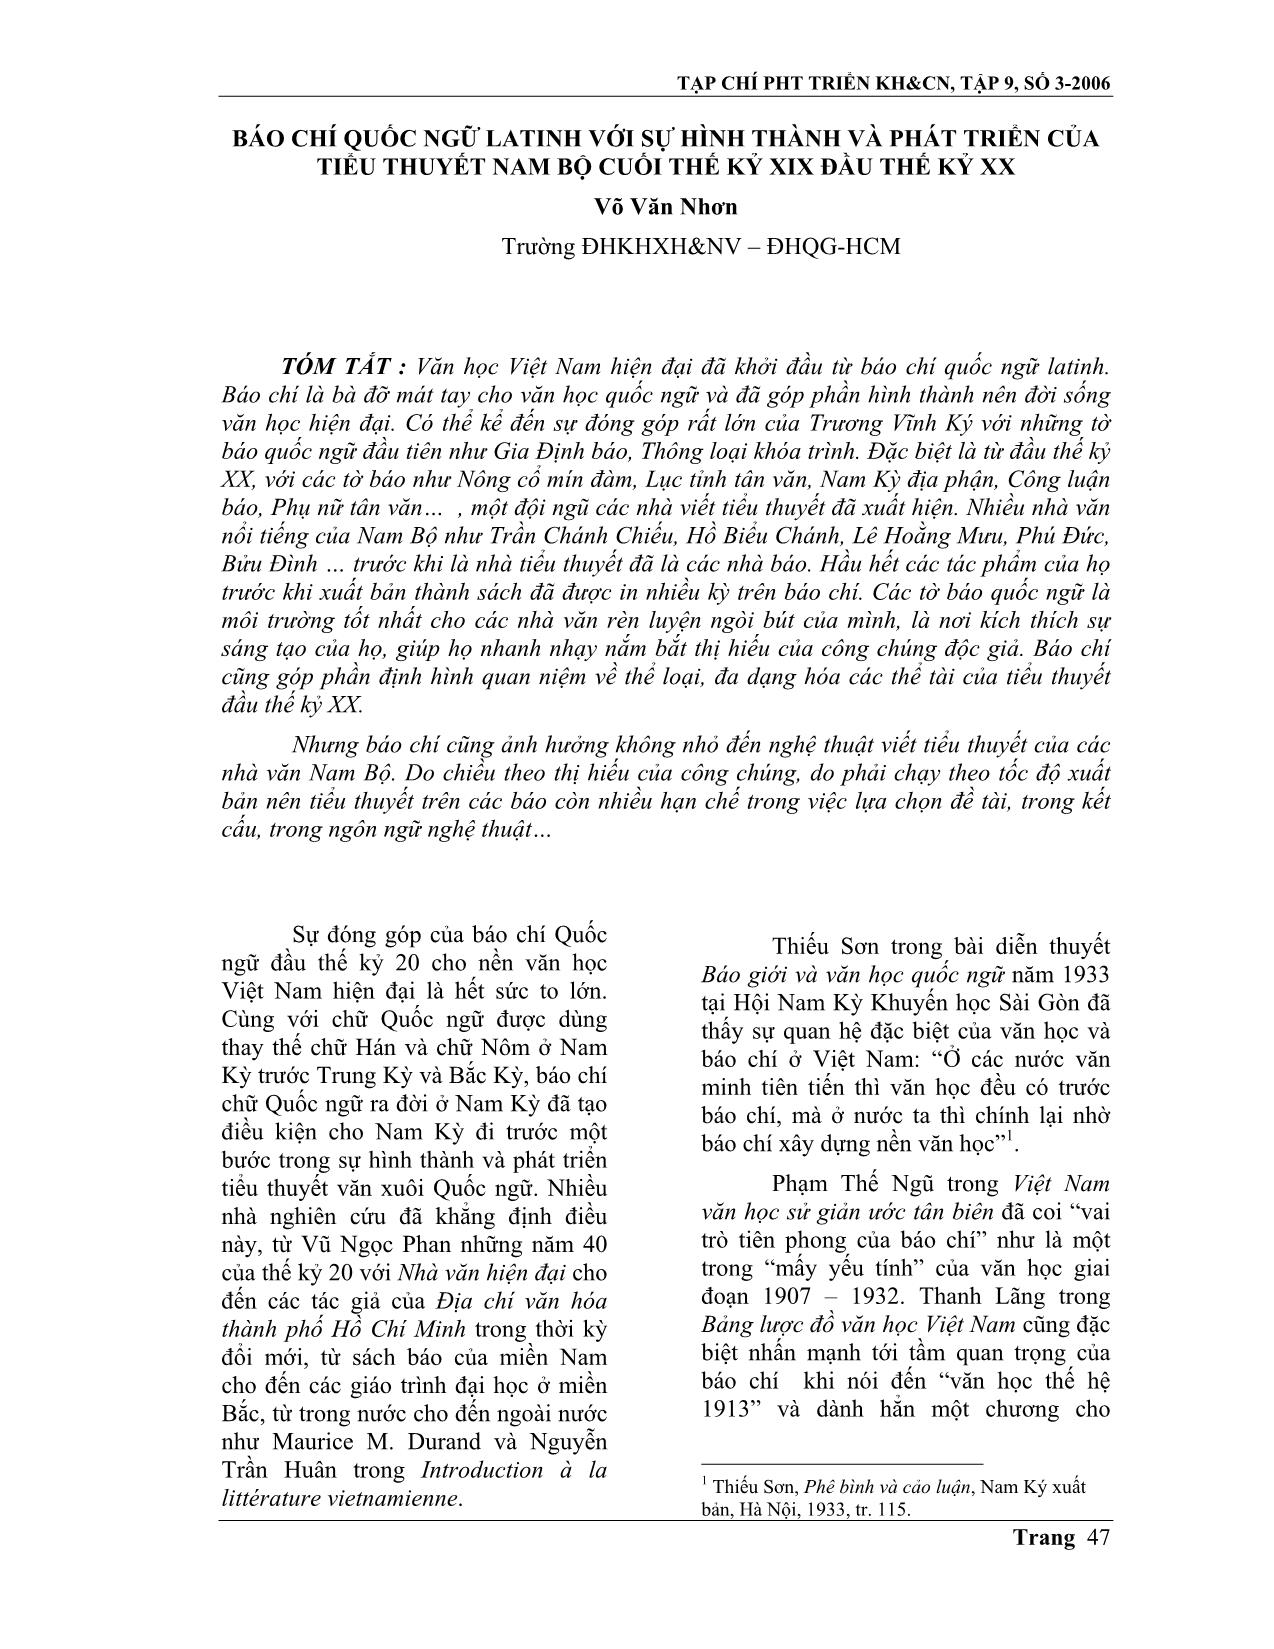 Báo chí quốc ngữ Latinh với sự hình thành và phát triển của tiểu thuyết Nam Bộ cuối thế kỷ XIX đầu thế kỷ XX trang 1